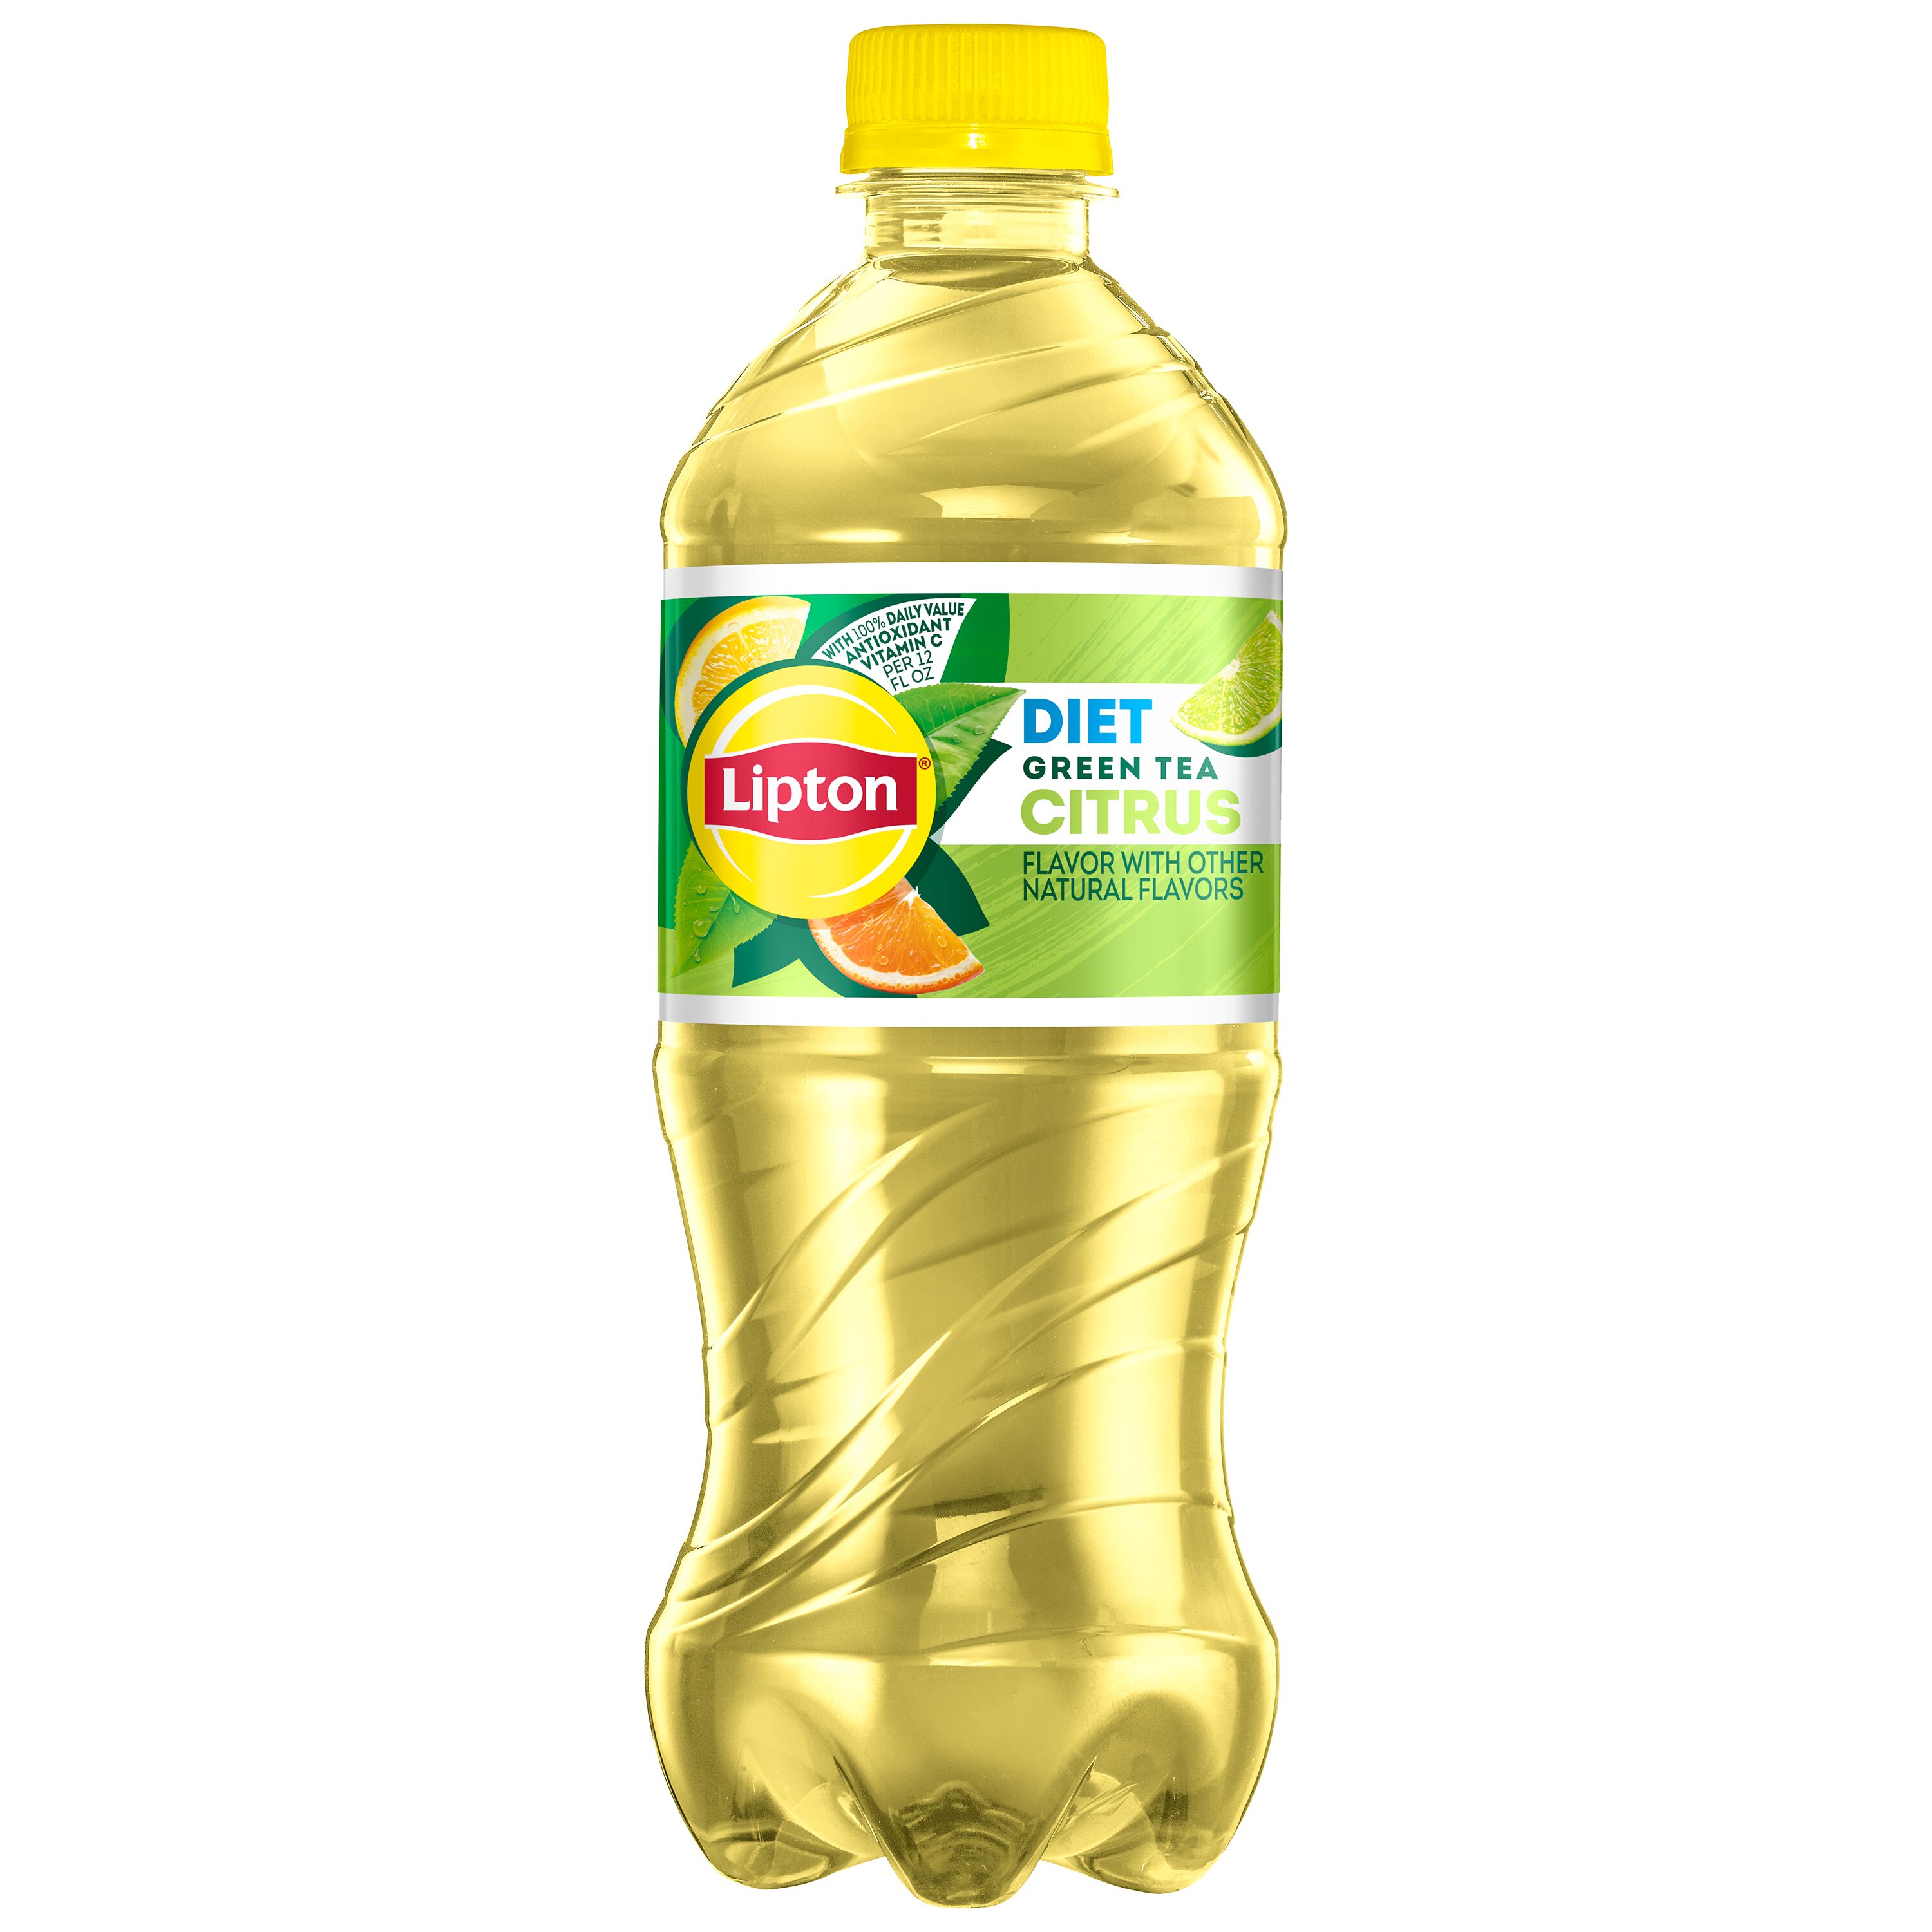 Lipton Diet Green Tea Citrus, Bottled Tea Drink, 20 fl oz, Bottle - image 1 of 5